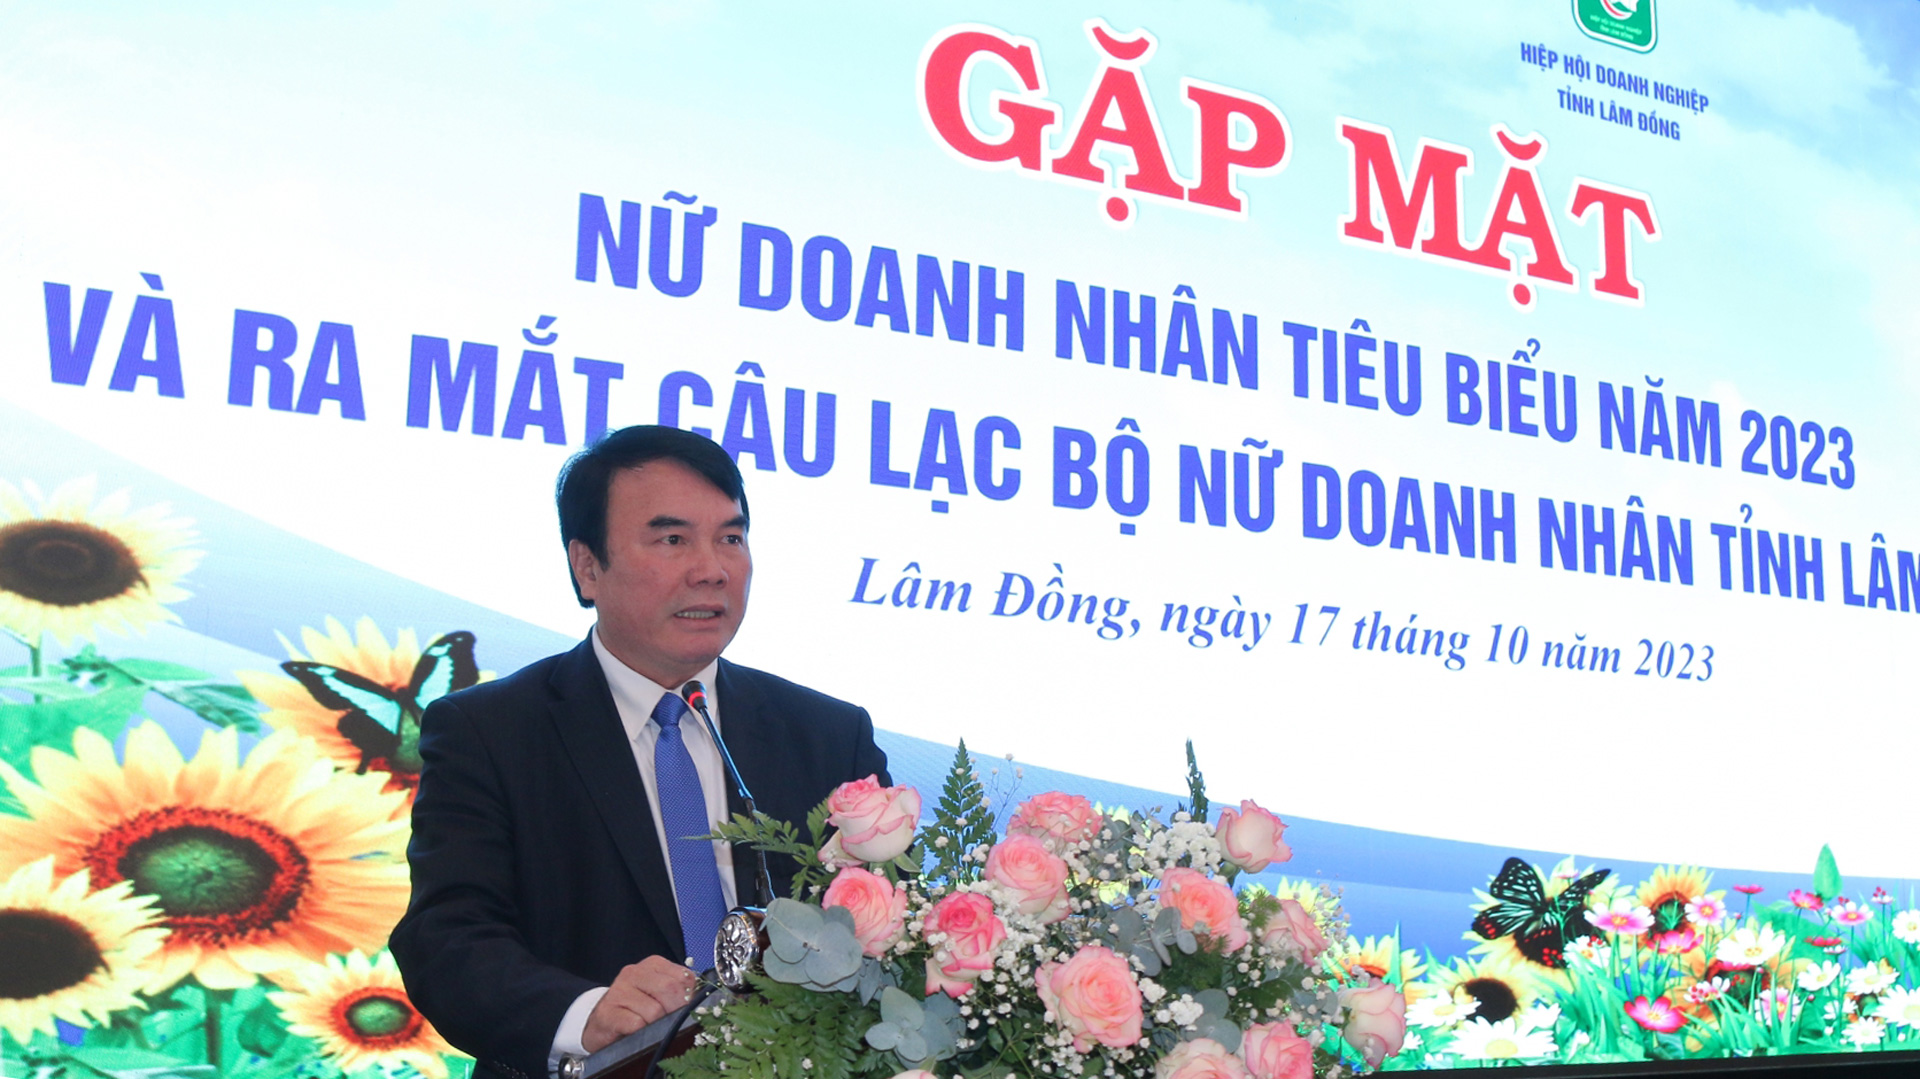 Đồng chí Phạm S – Phó Chủ tịch UBND tỉnh ghi nhận, biểu dương những đóng góp của các nữ doanh nhân, các doanh nghiệp nữ tỉnh Lâm Đồng